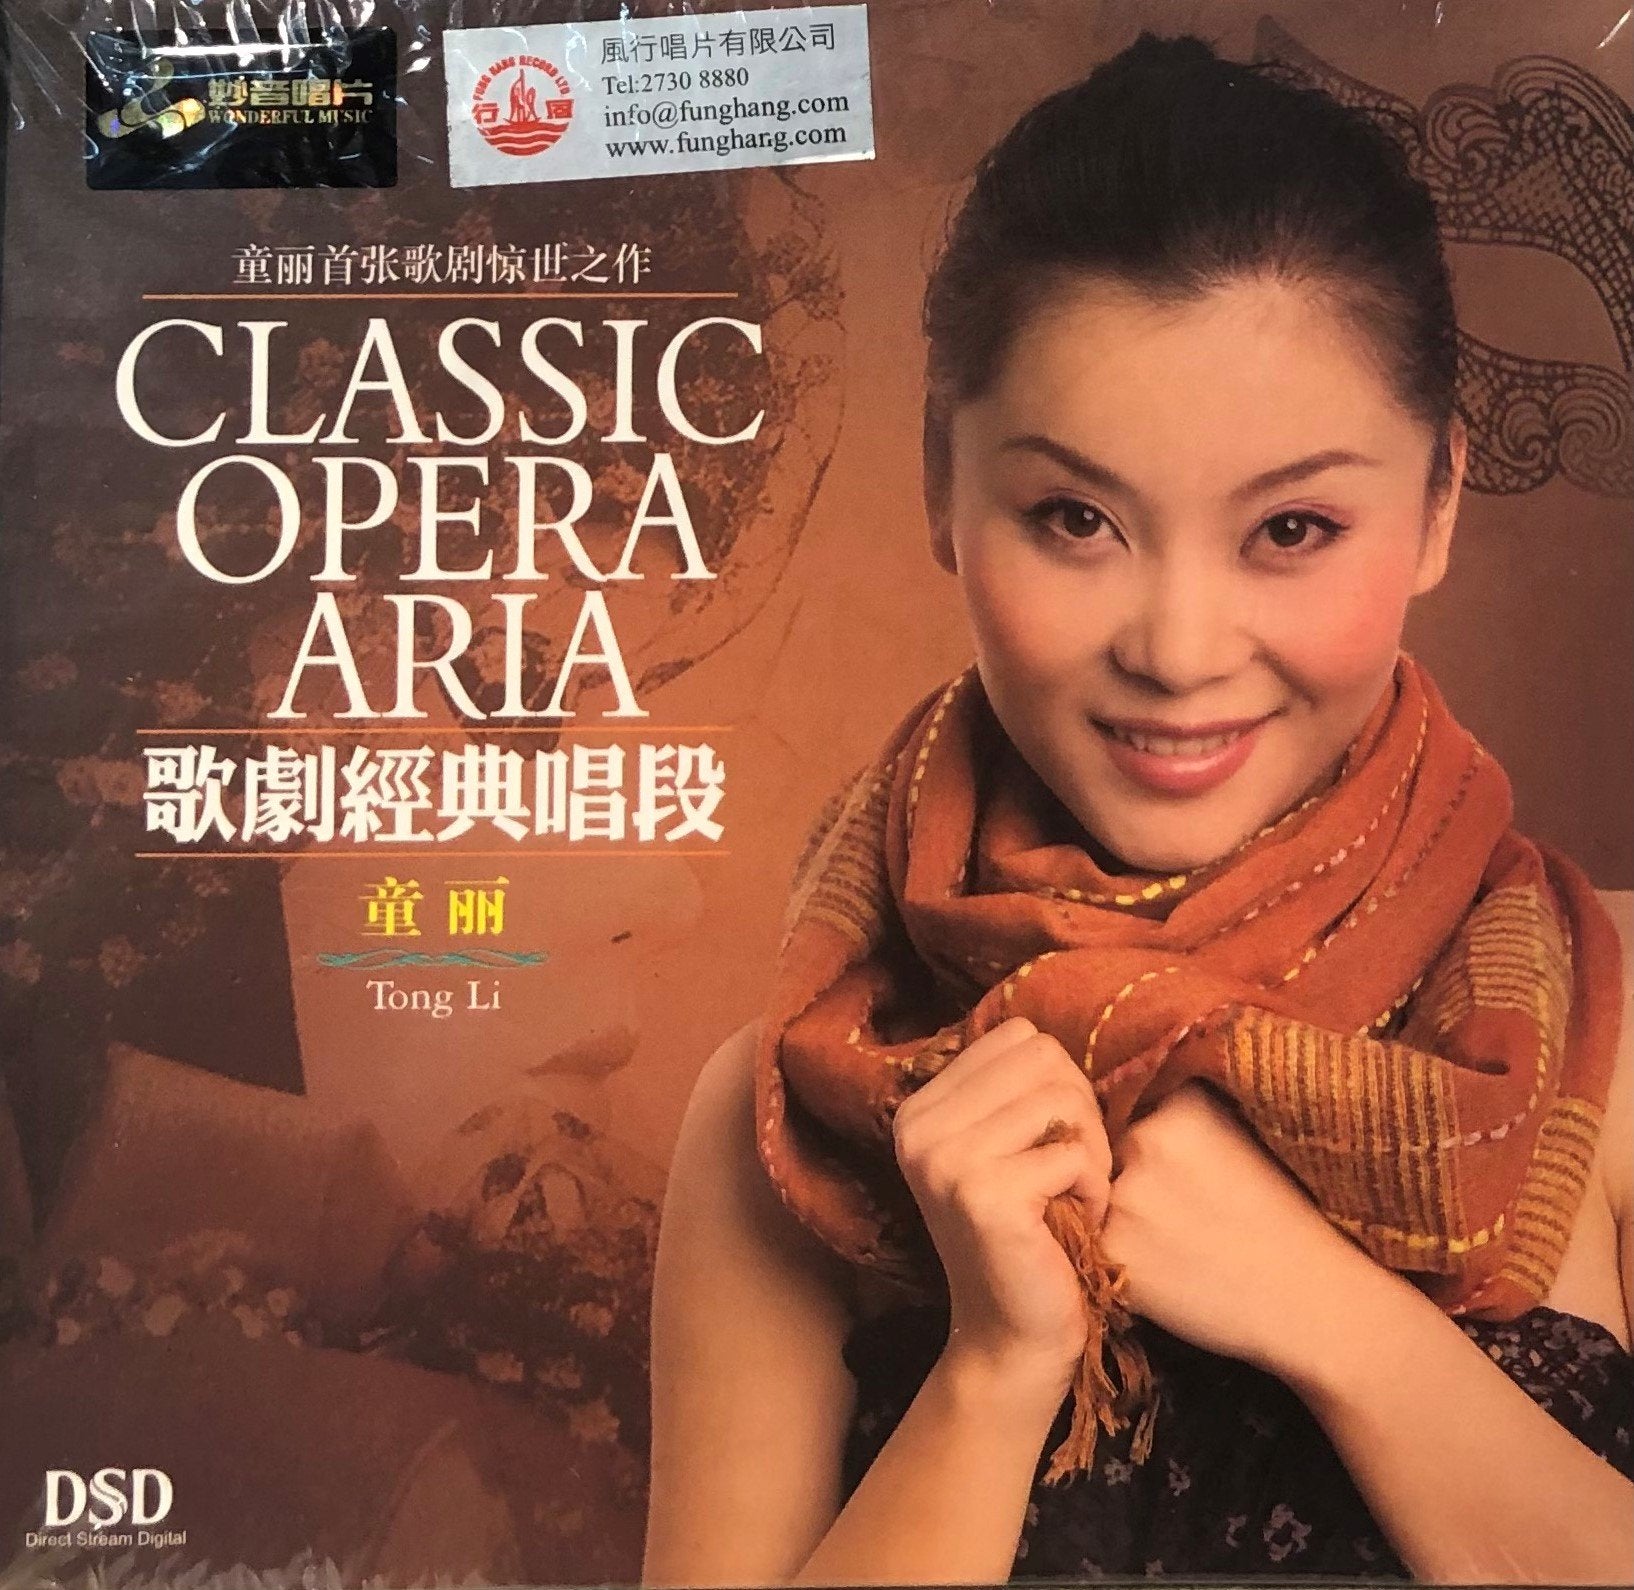 TONG LI - 童麗 CLASSICA OPERA ARIA 歌劇經典唱段 (CD)